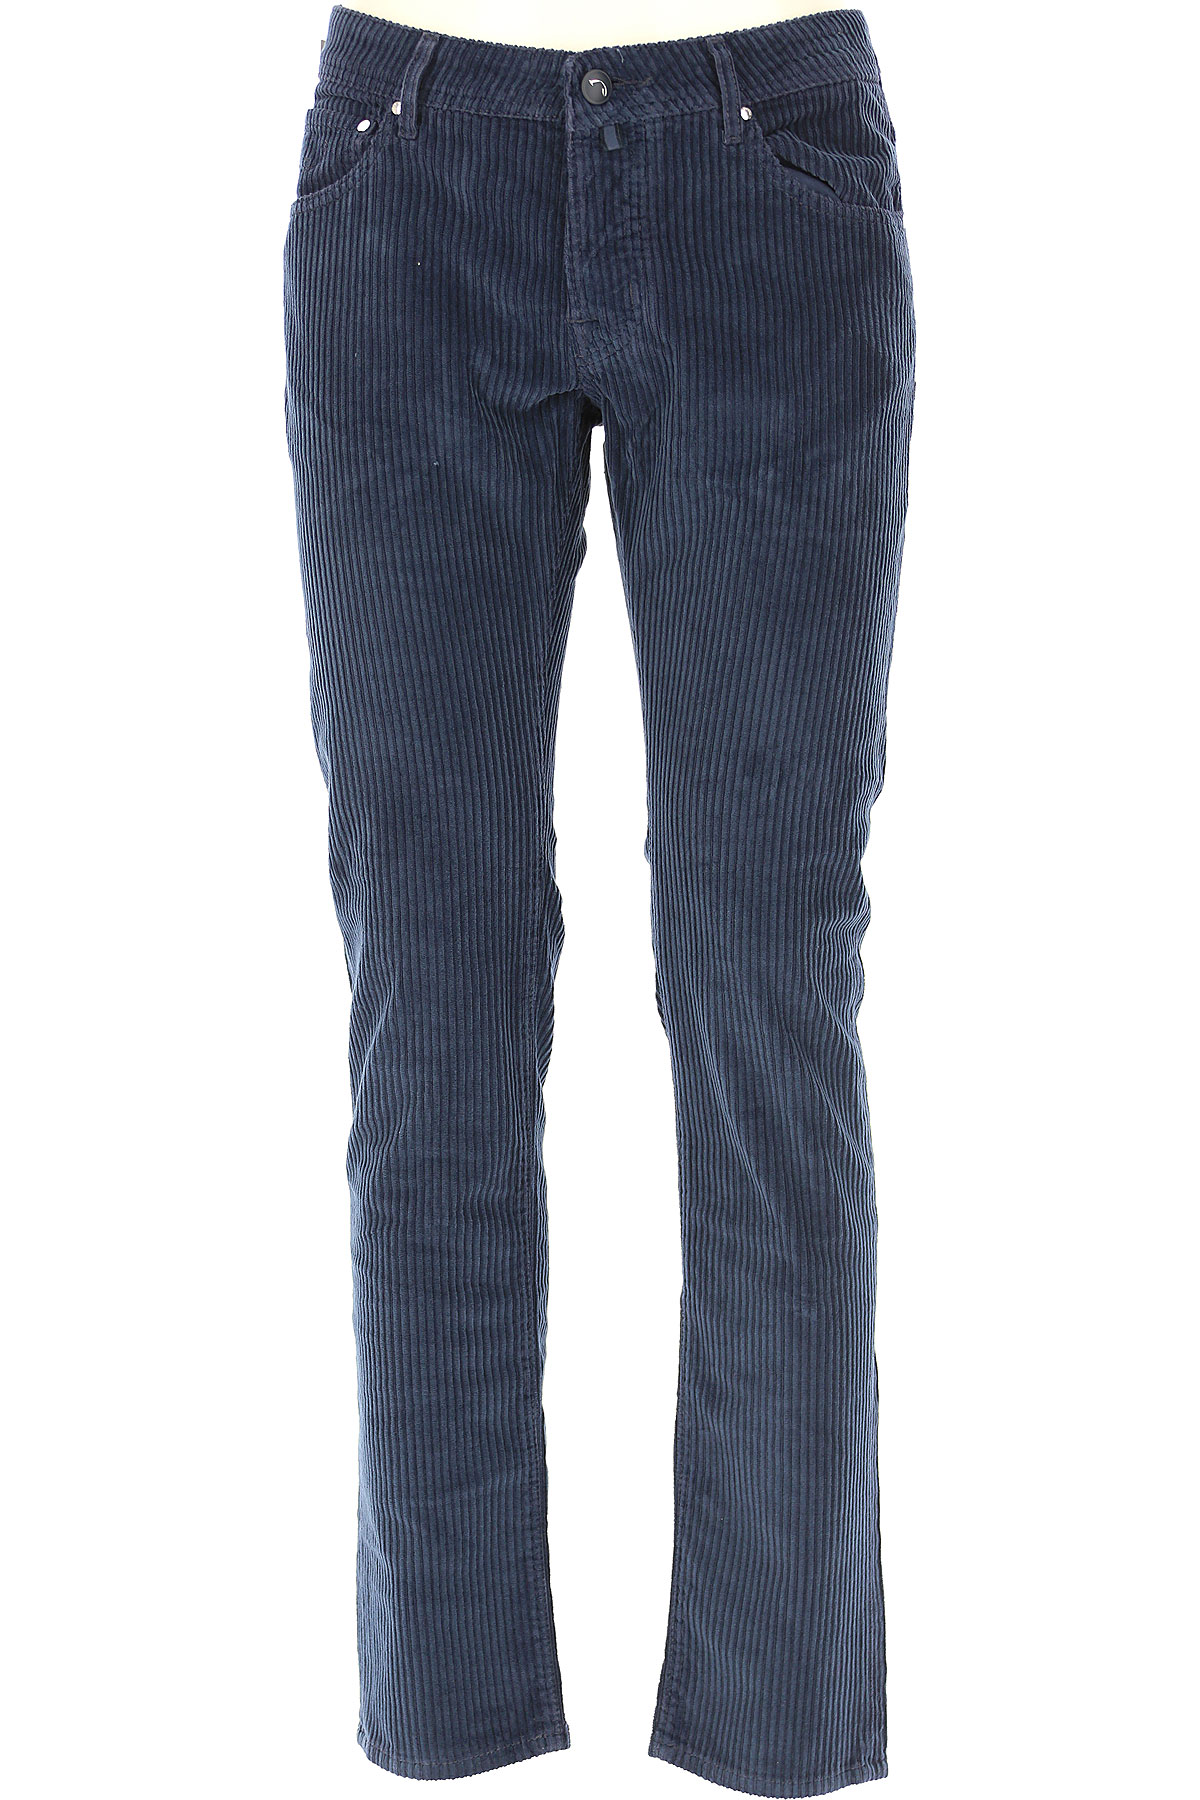 Jacob Cohen Jeans, Bluejeans, Denim Jeans für Herren Günstig im Sale, Marineblau, Baumwolle, 2017, 46 48 49 52 54